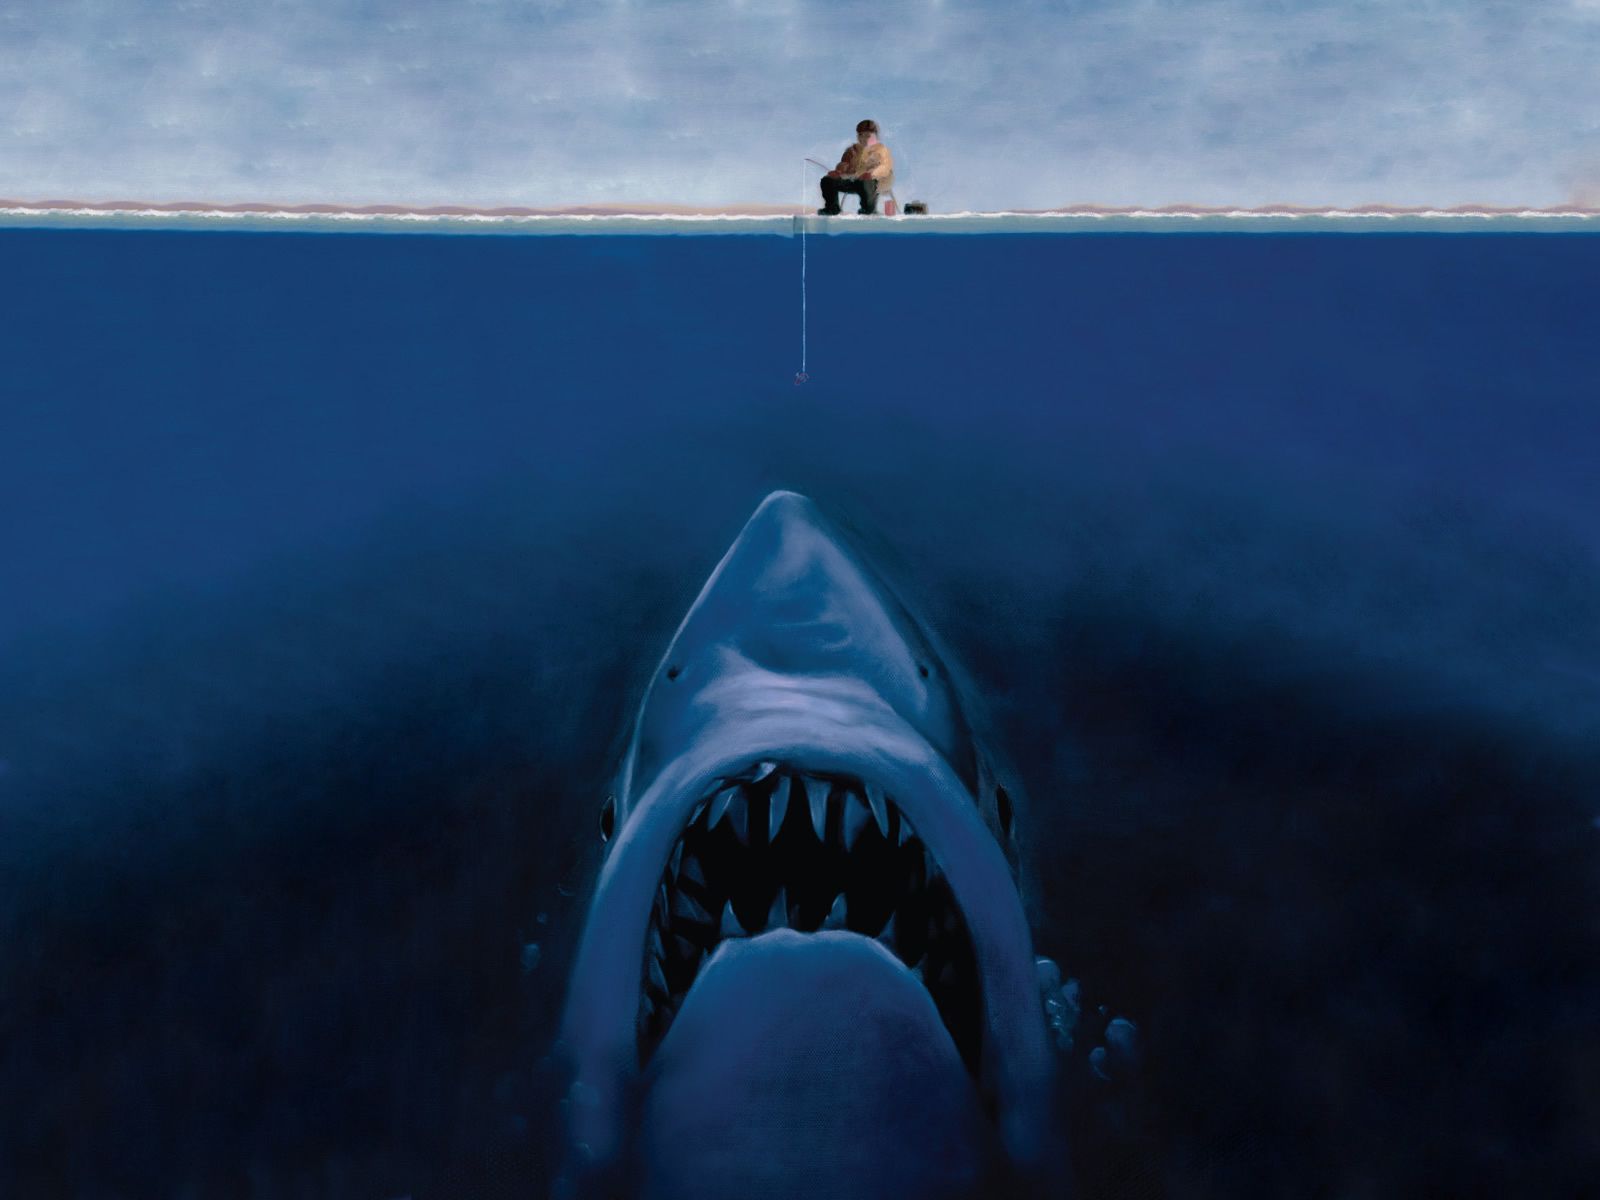 Desktop big images of sharks download